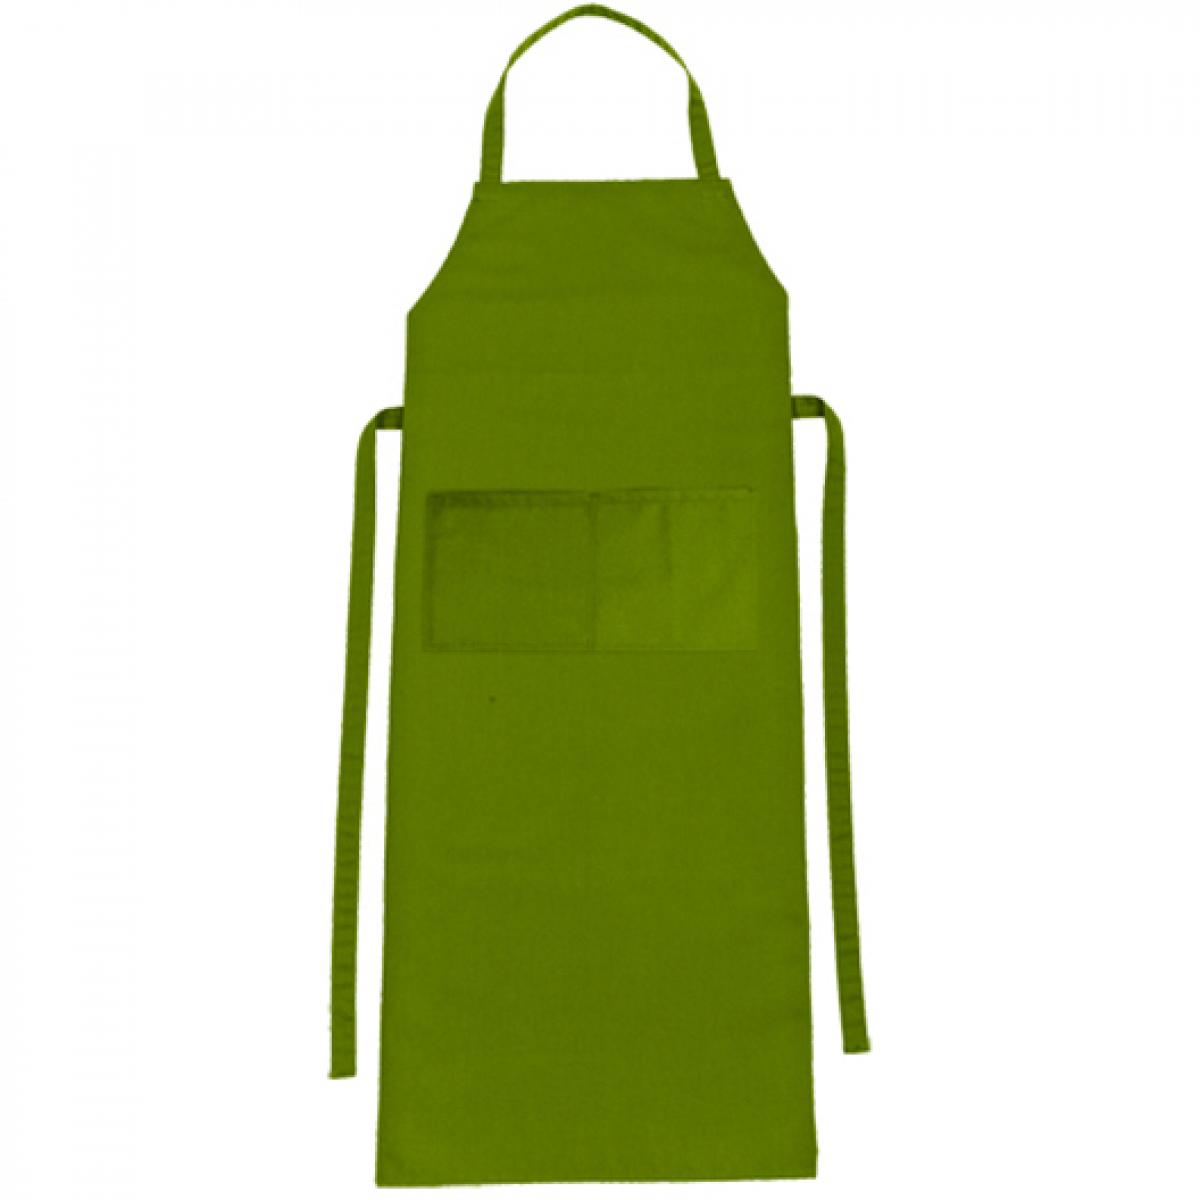 Hersteller: CG Workwear Herstellernummer: 01146-01 Artikelbezeichnung: Latzschürze Verona Classic Bag 90 x 75 cm Farbe: Leaf